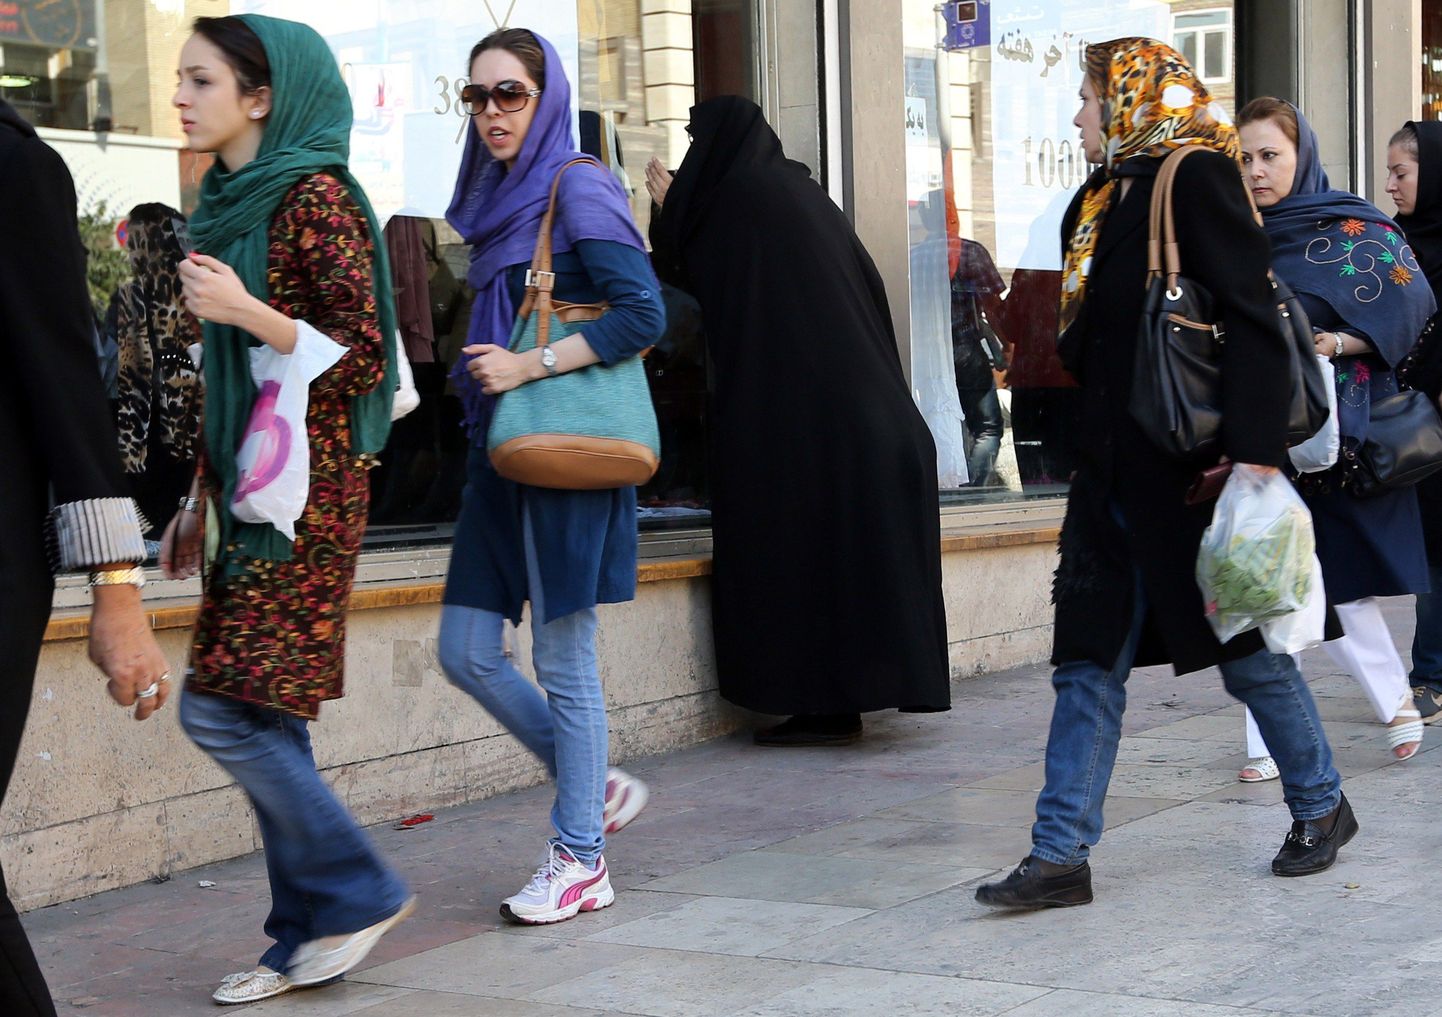 Noored naised Teheranis teksapükse kandmas. Eelnevalt oli Iisraeli peaminister Benjamin Netanyahu väitnud, et Iraak on selline riik, kus ei või isegi teksasid kanda.